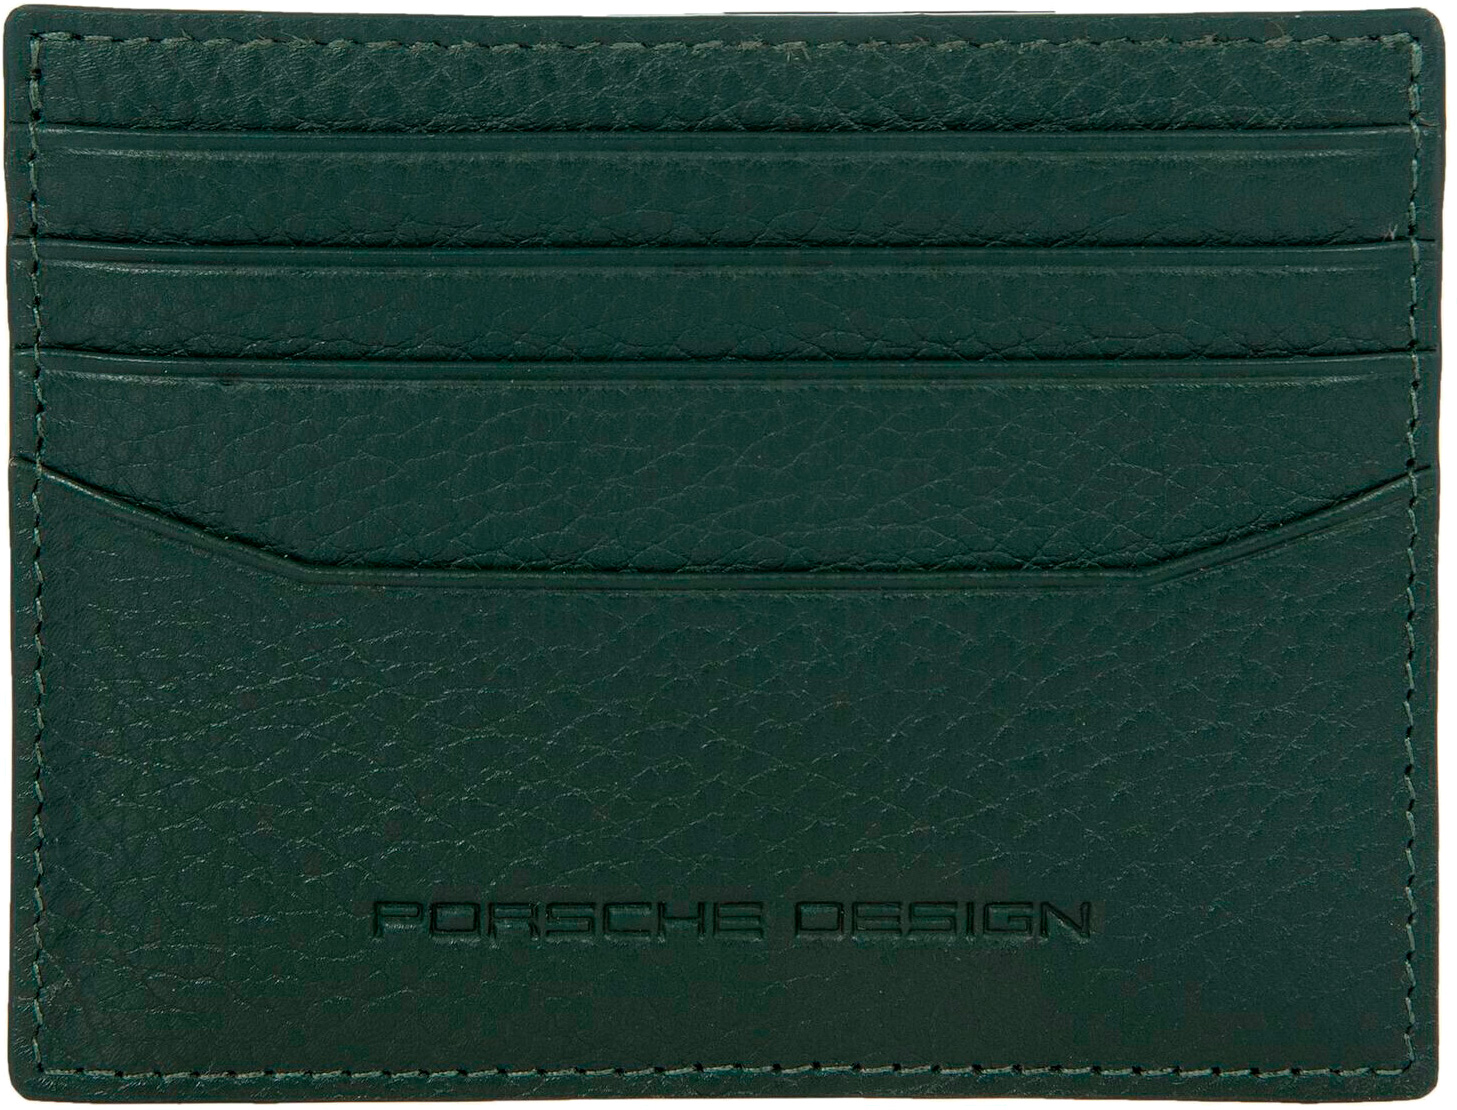   Porsche Design OSO09918.005